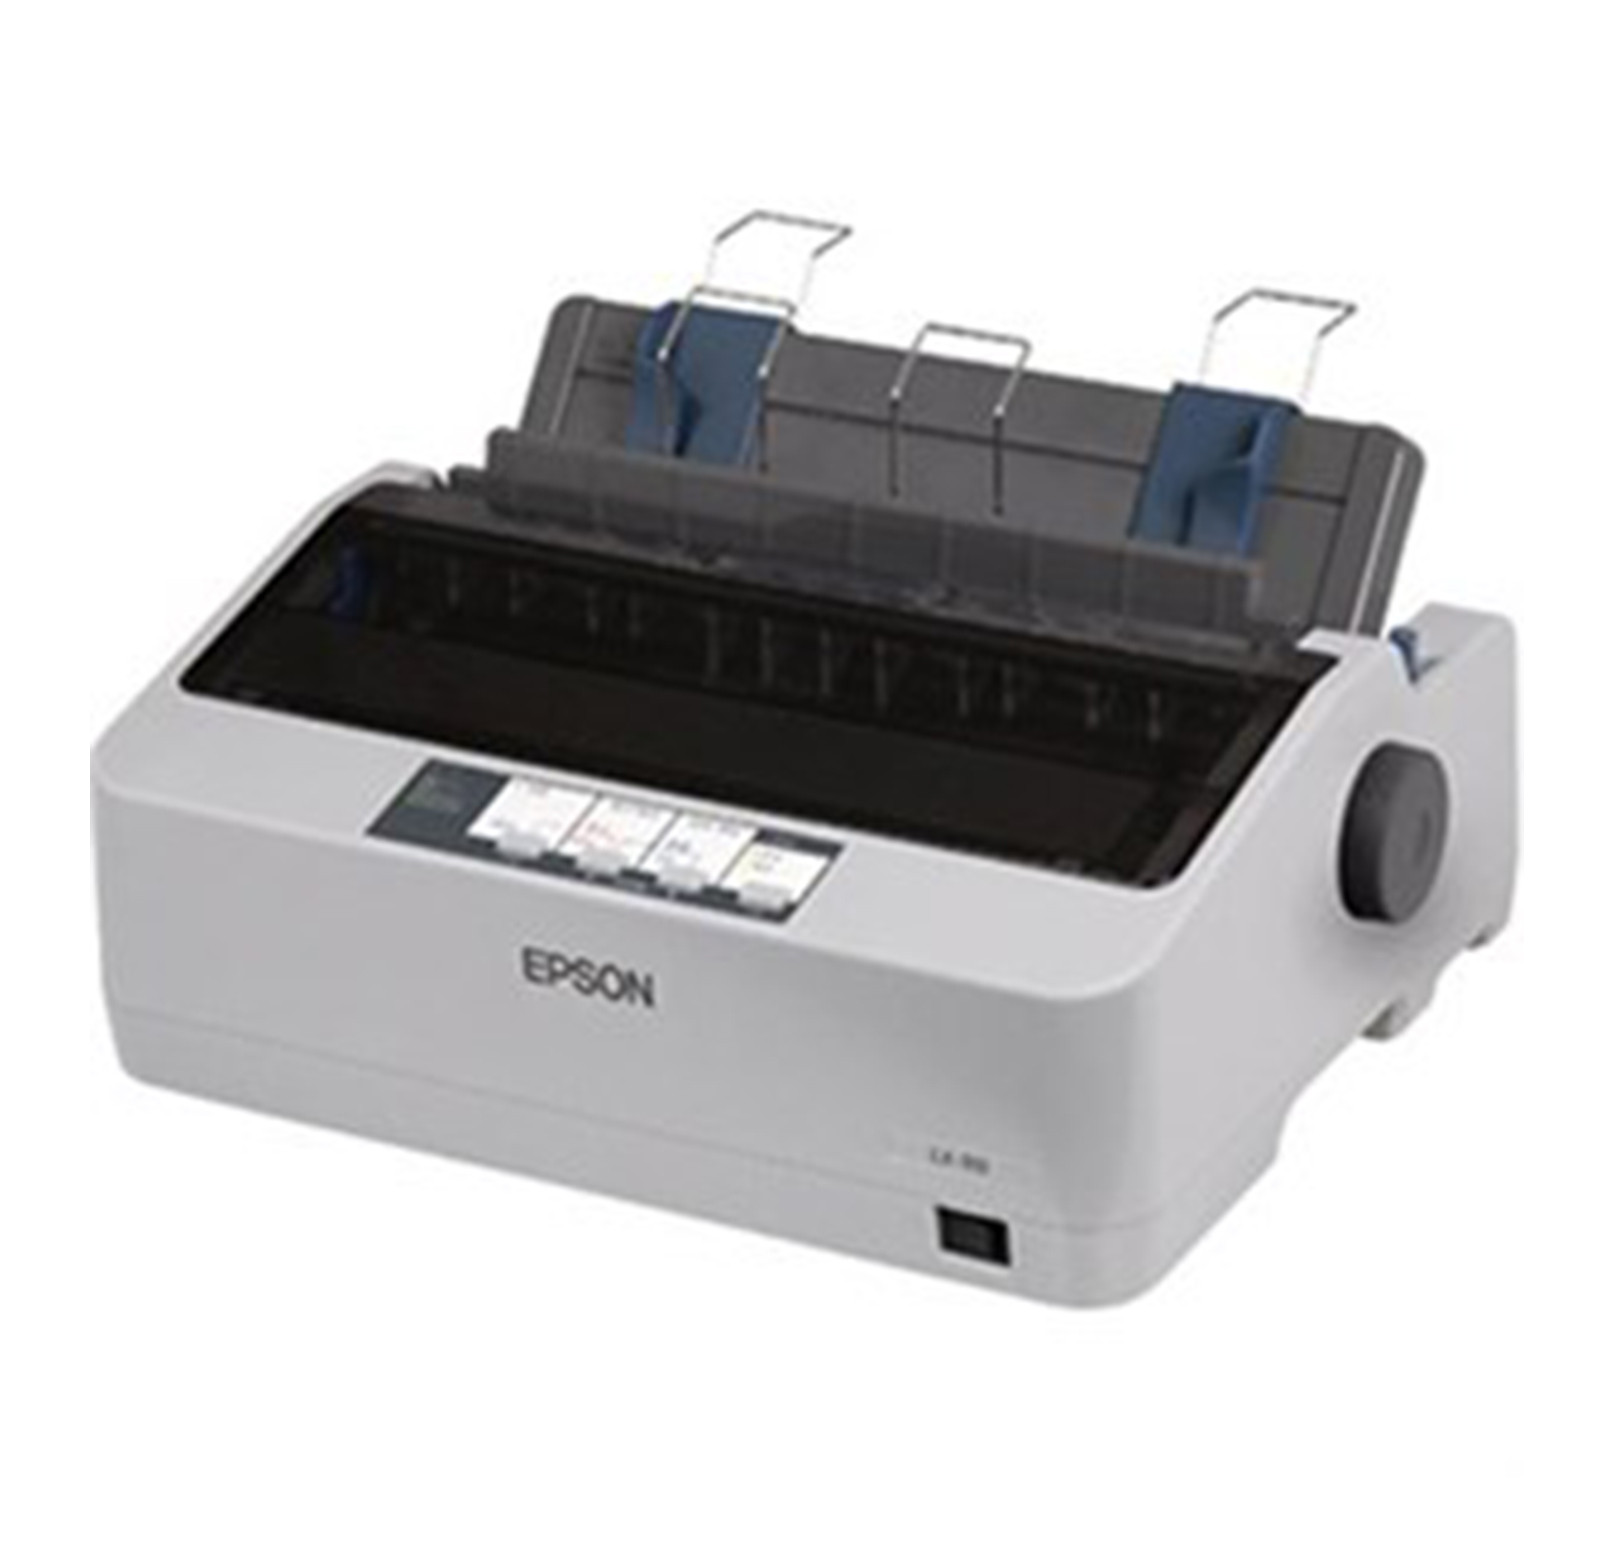 Máy in kim Epson LX-310 được sản xuất trên công nghệ hiện đại